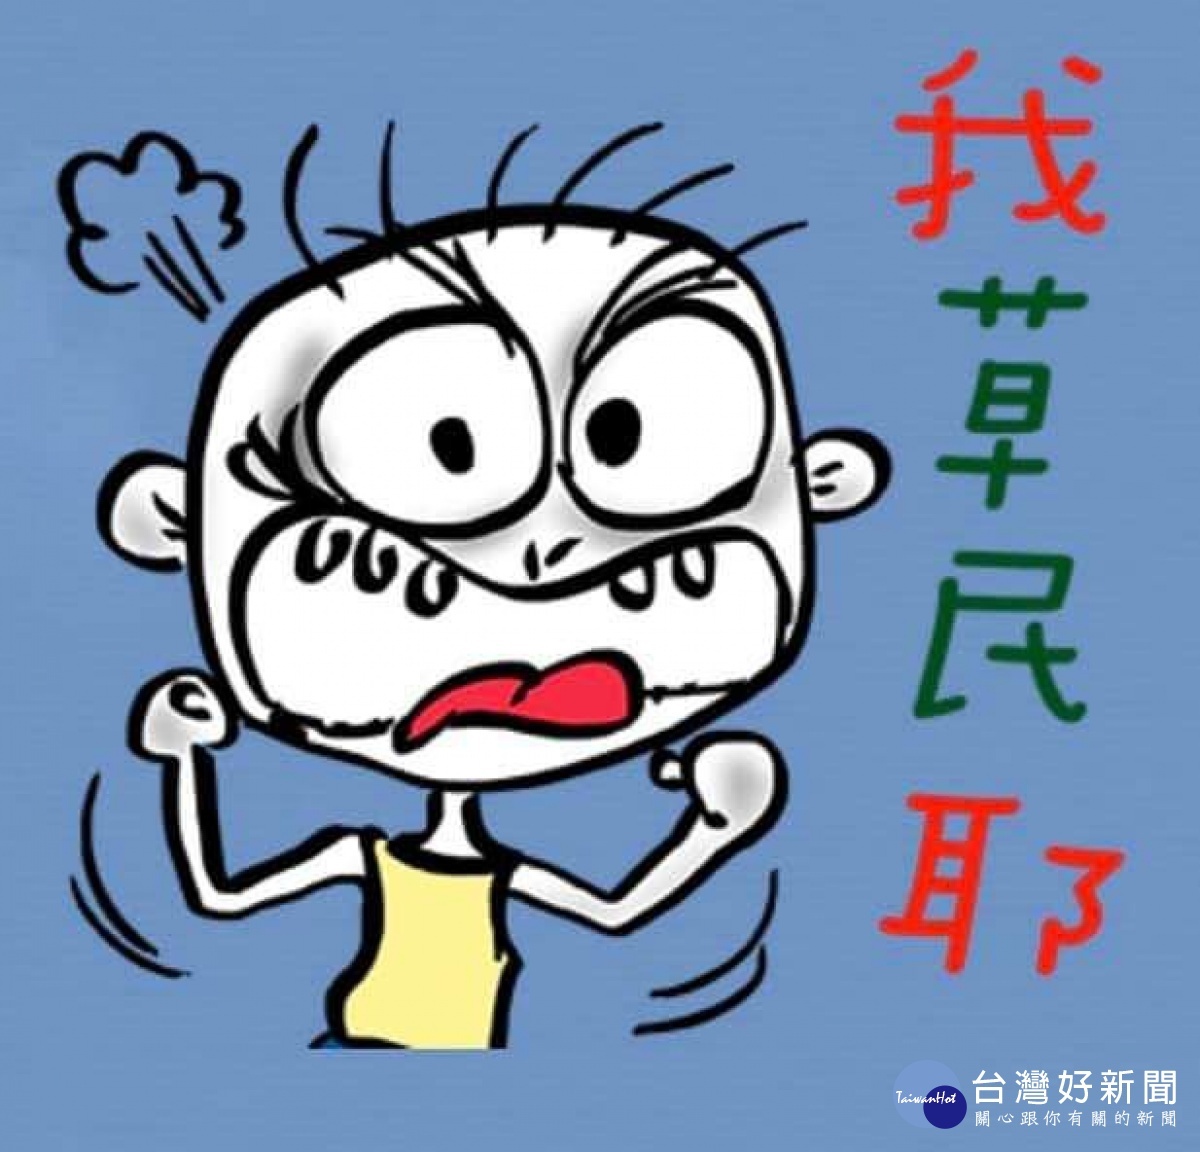 陽明高中校長宋慶瑋被迫去職 臉書PO圖調侃自己是草民